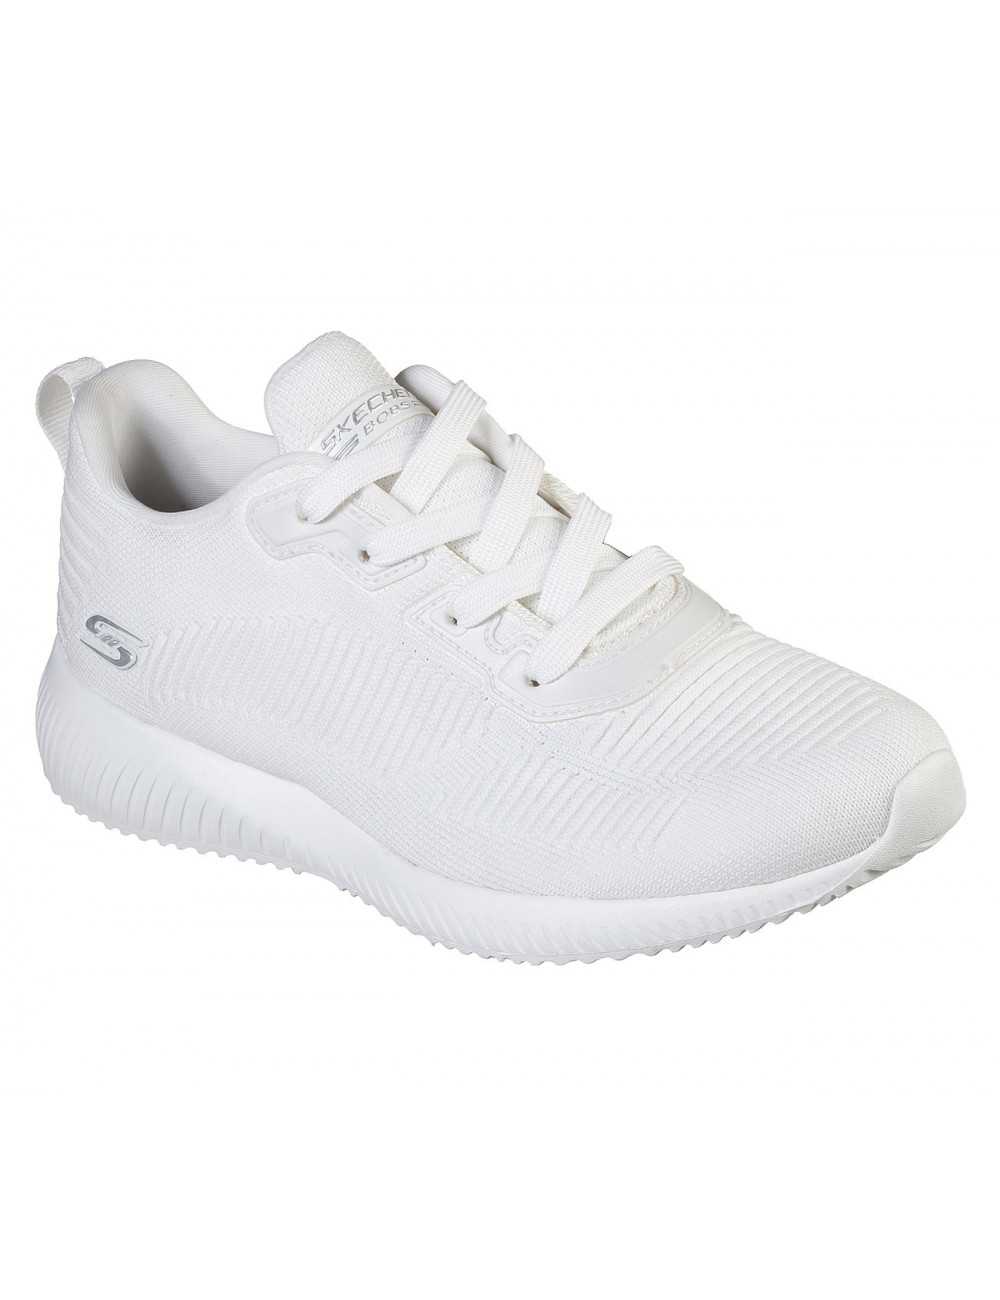 Zapatillas de mujer Blanco | (32504)